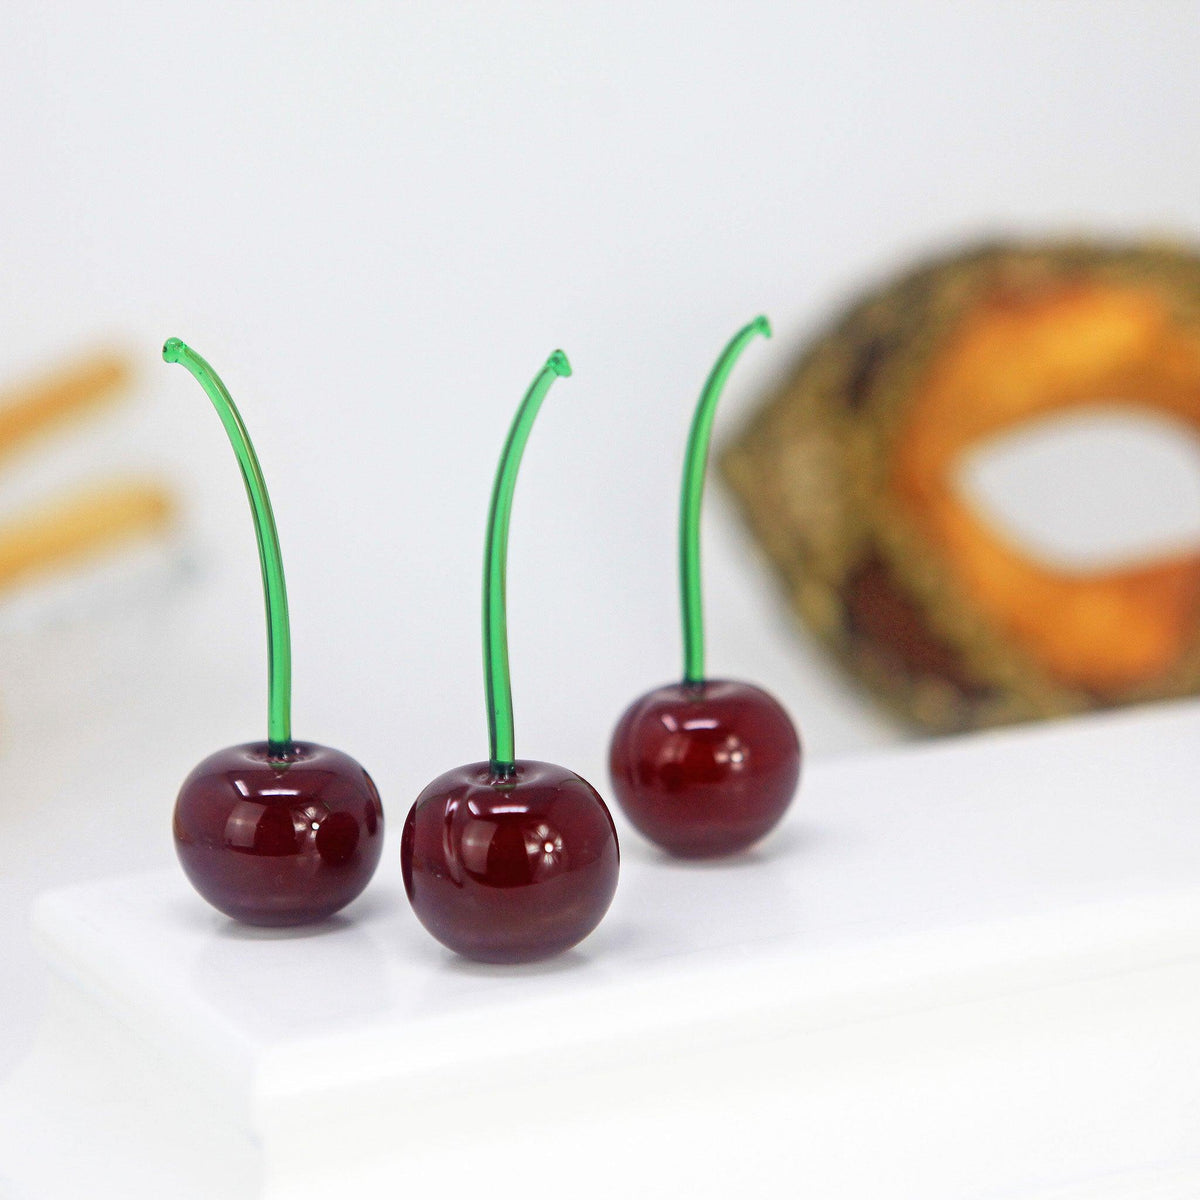 Murano Glass Cherries, Green Stem, Sets of 3 or 5, Handmade in Murano, Italy - MyItalianDecor